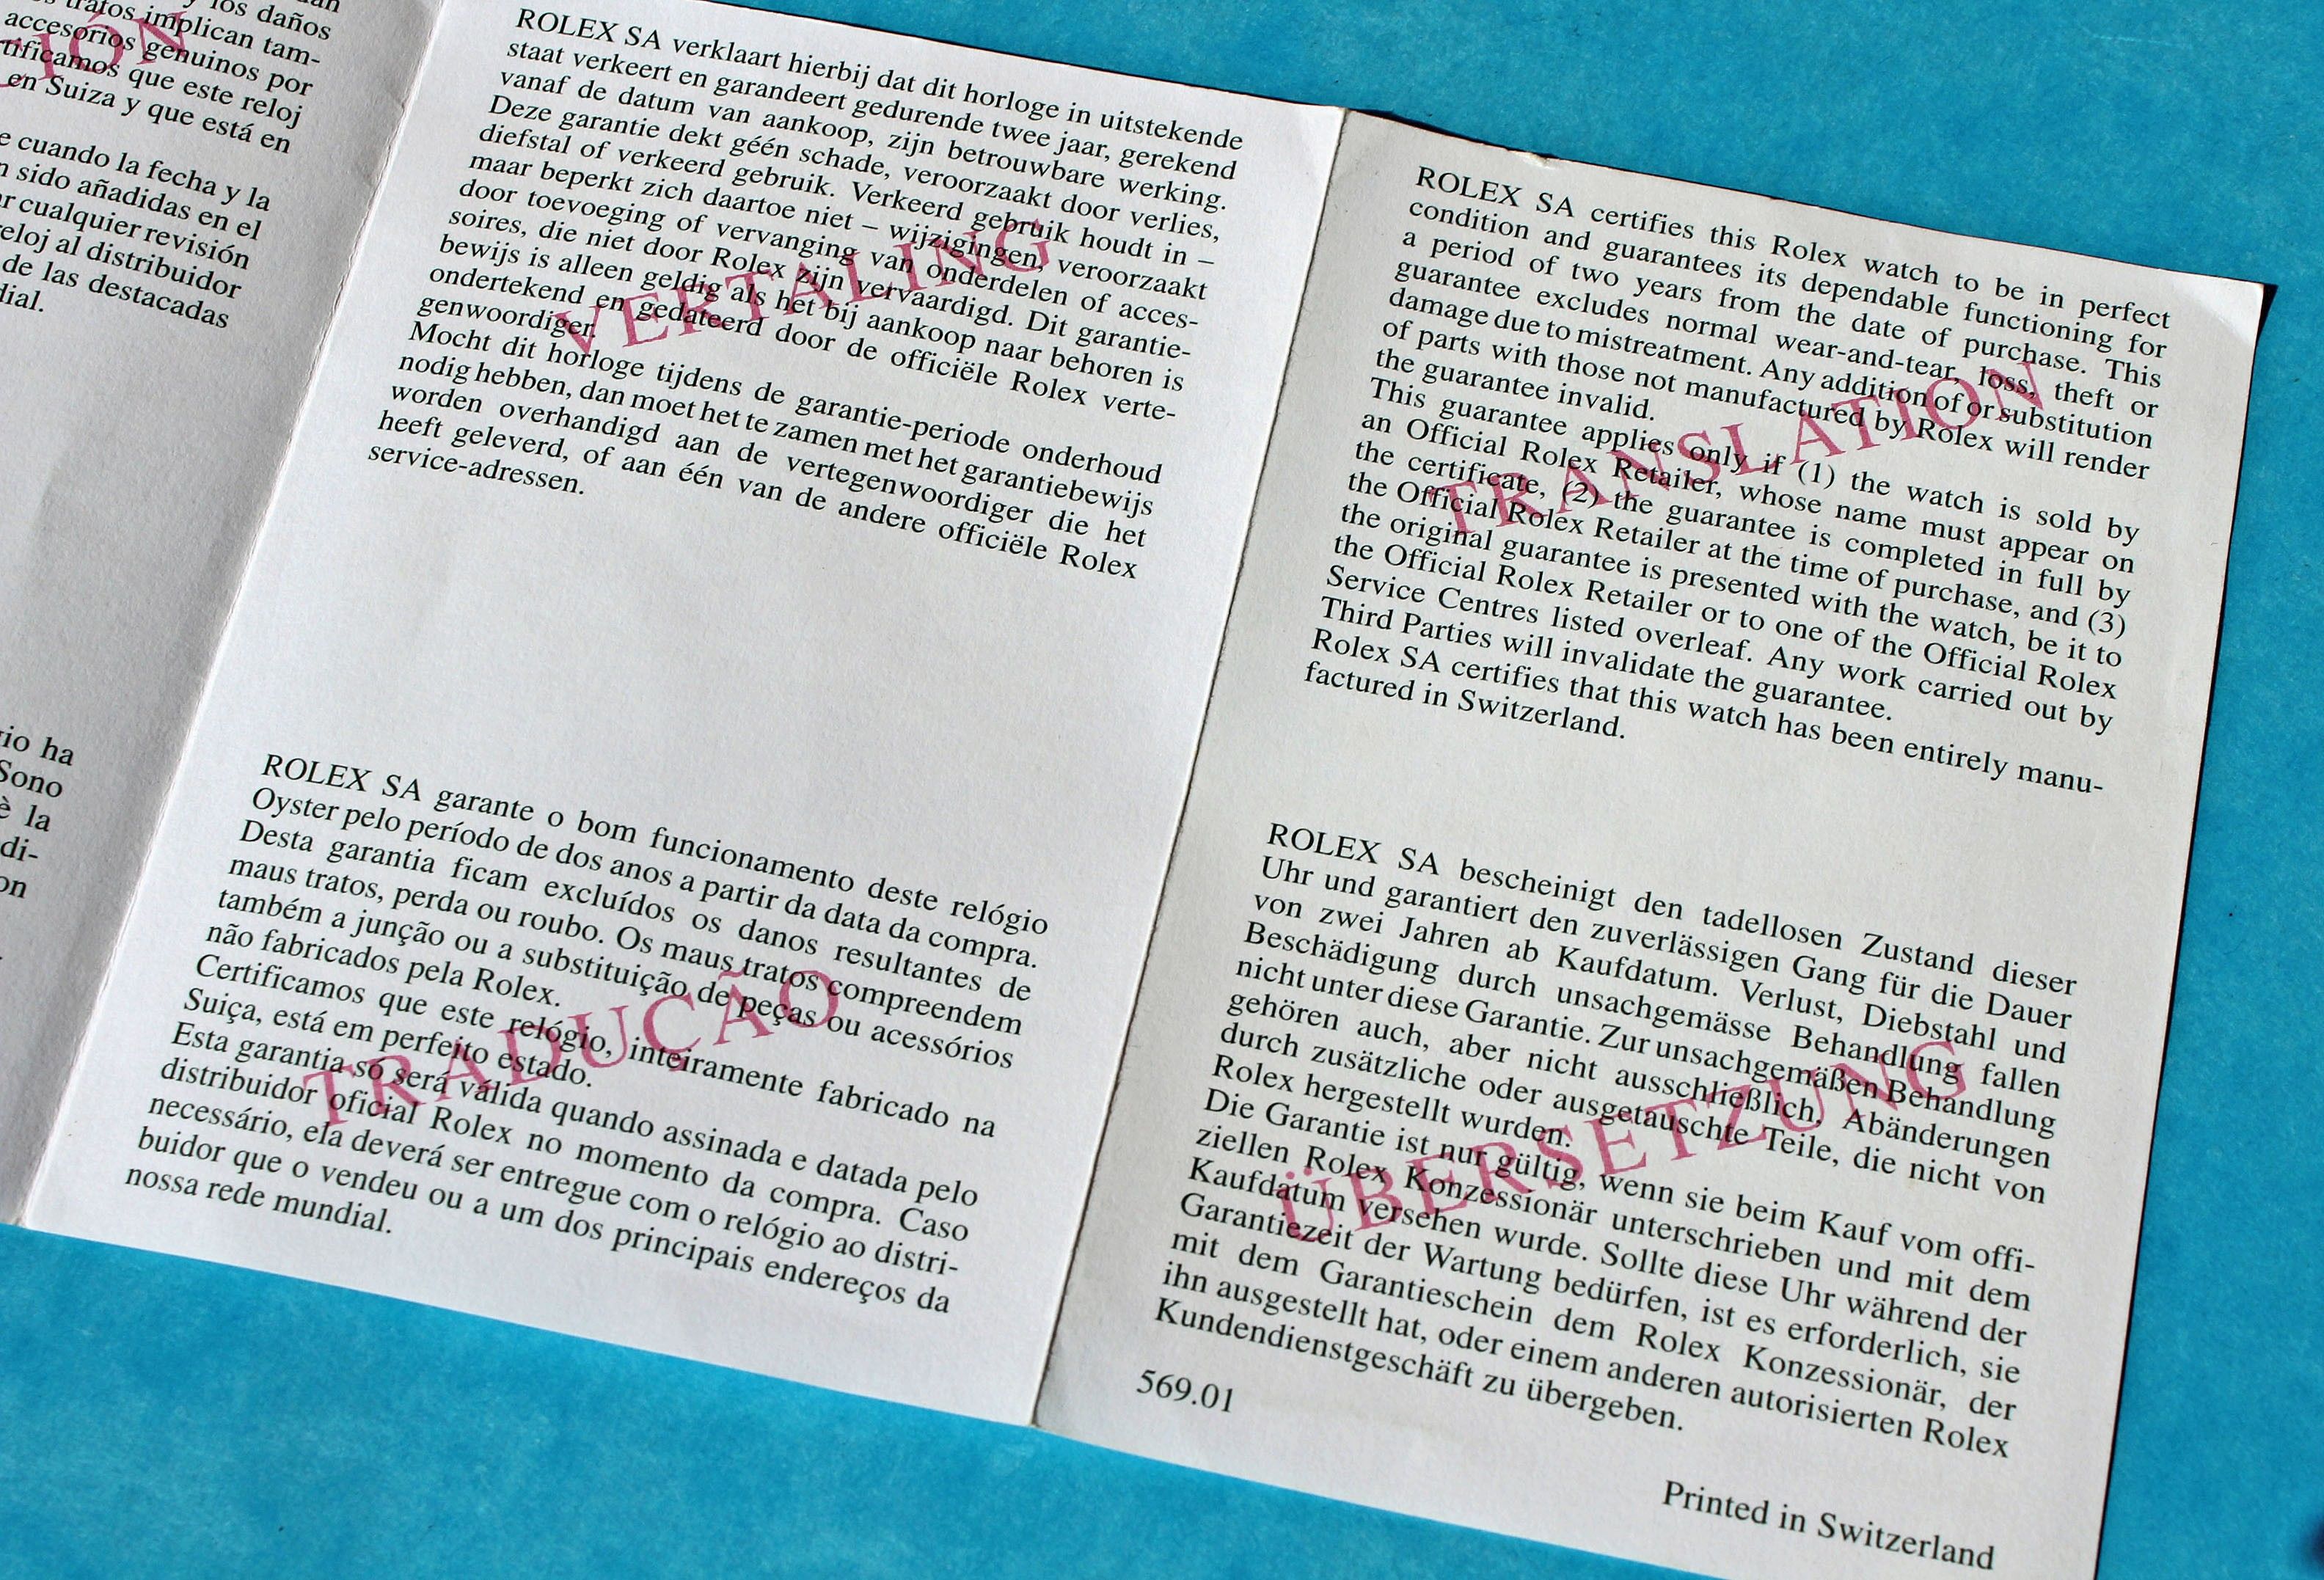 Original Rolex white vintage translation supplement paper 70's ref 569.01 Printed Switzerland